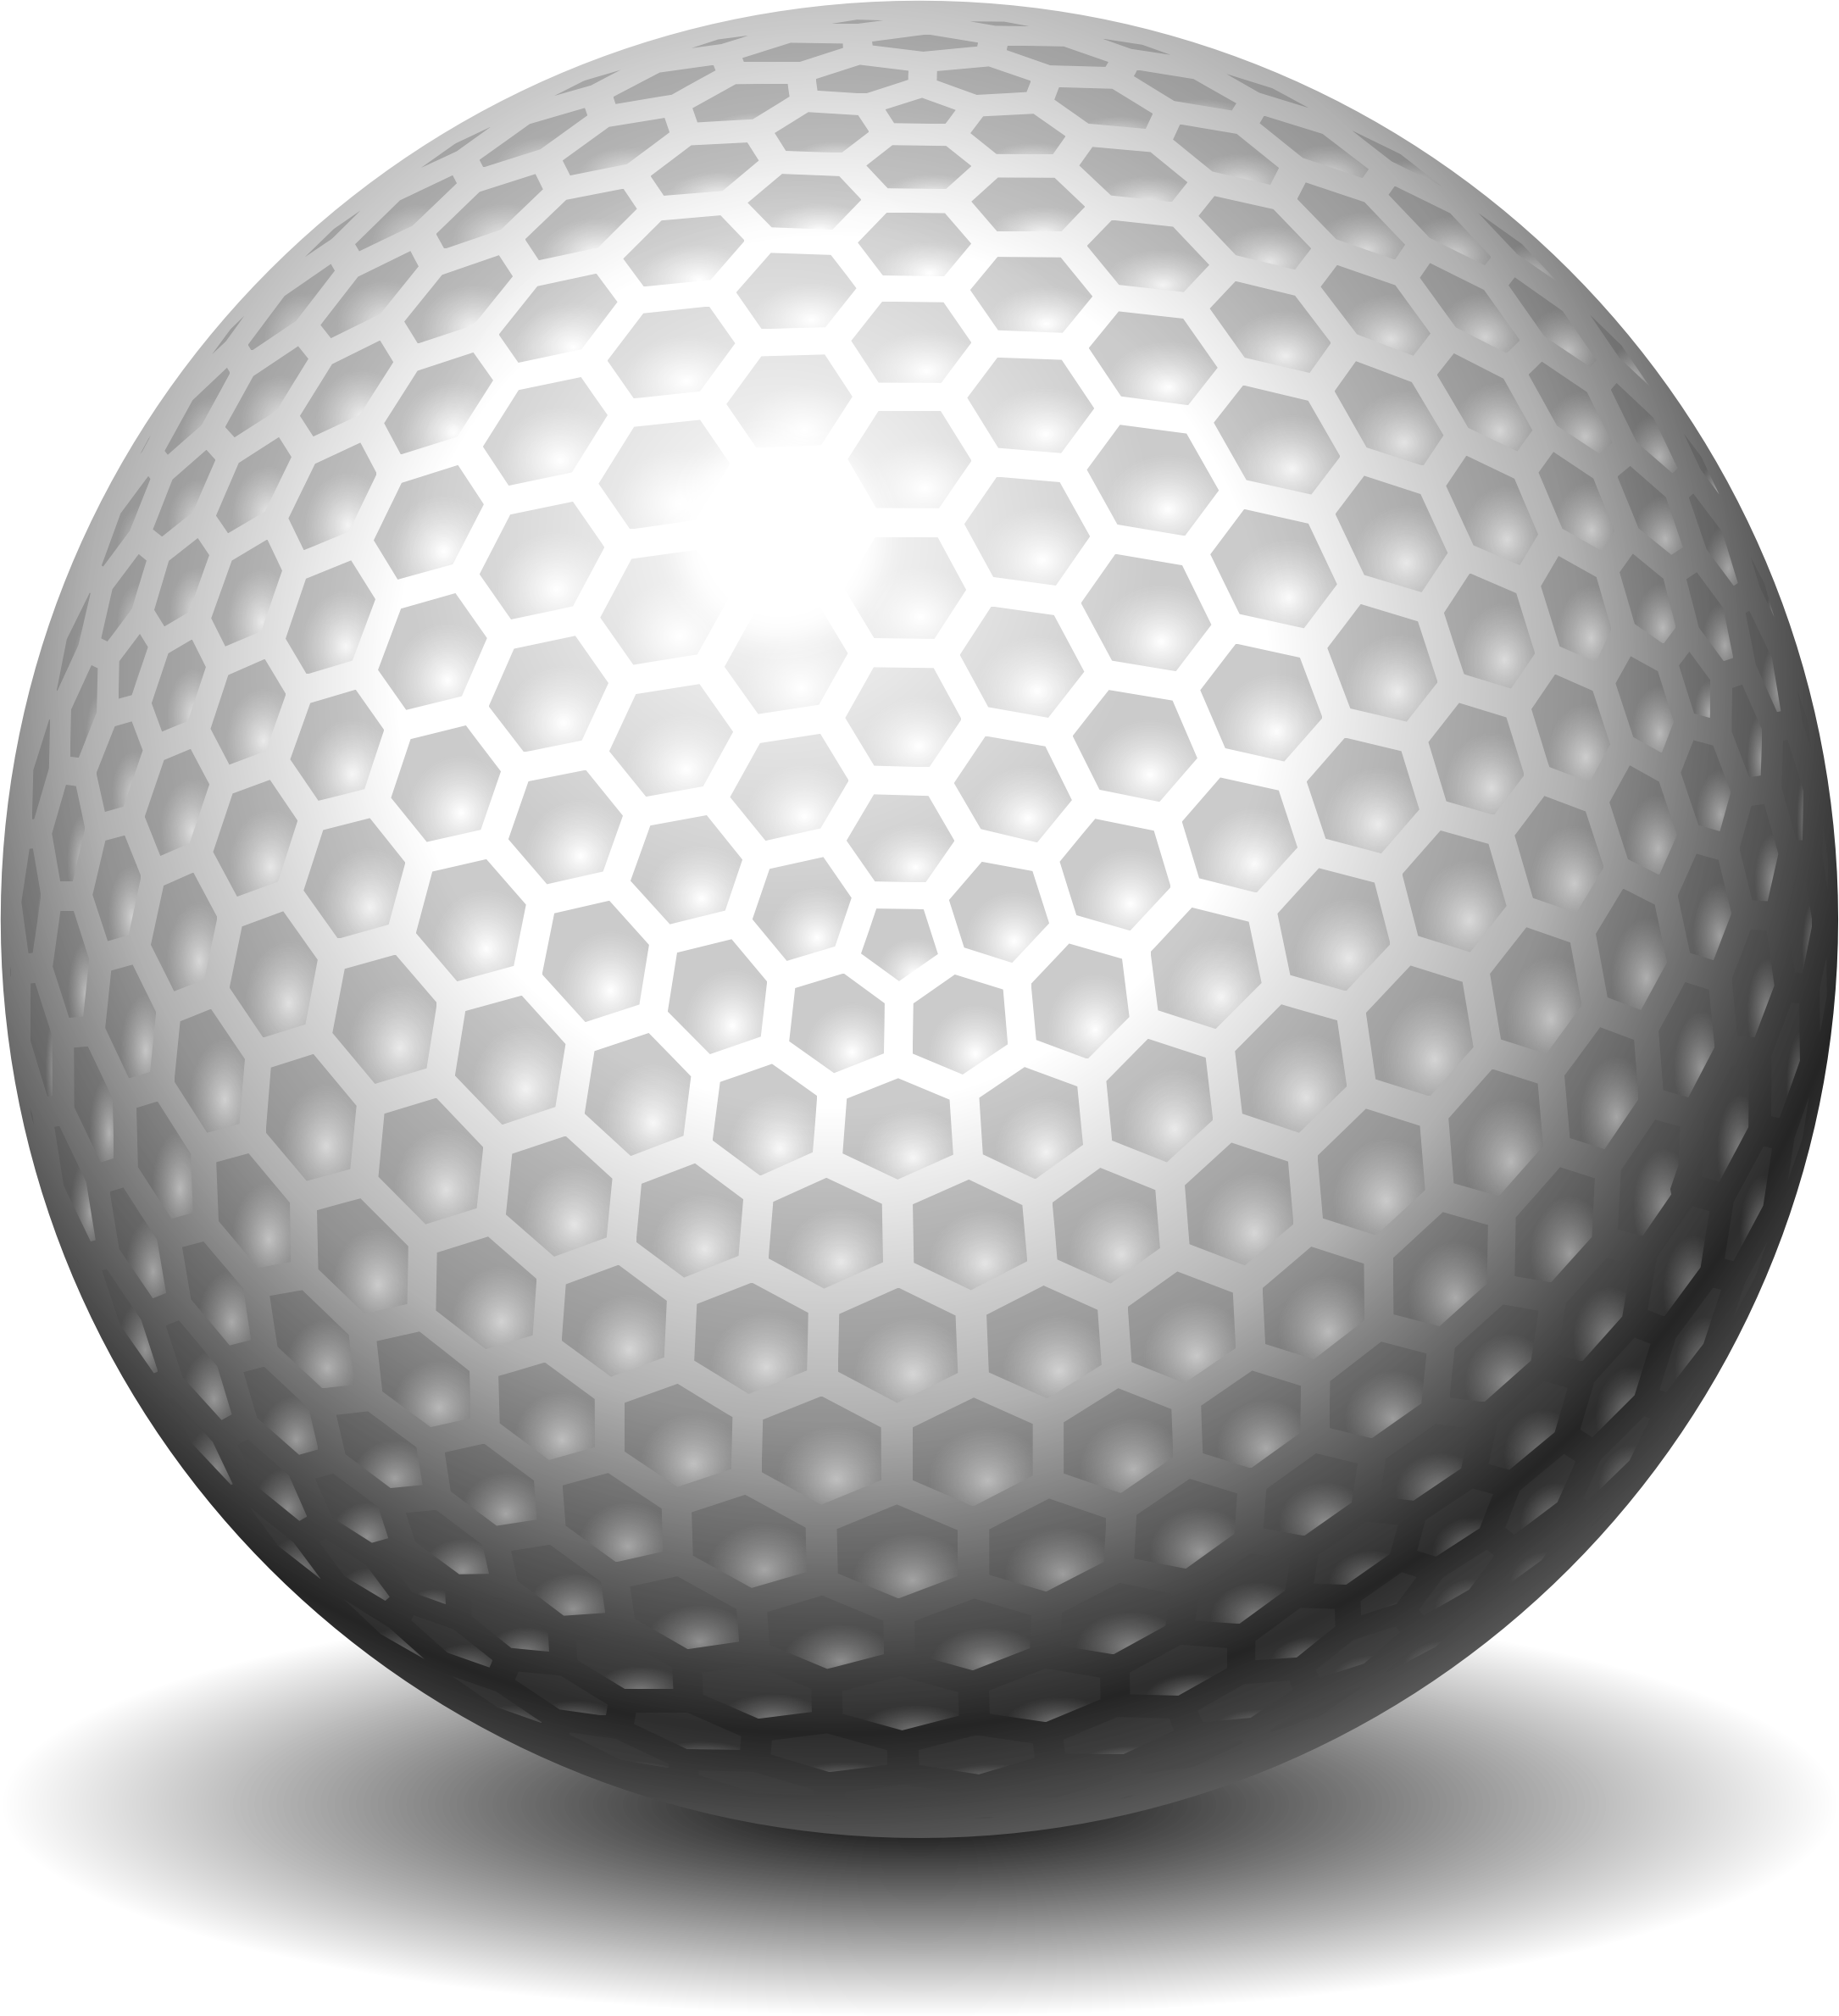 Golf ball clipart 2